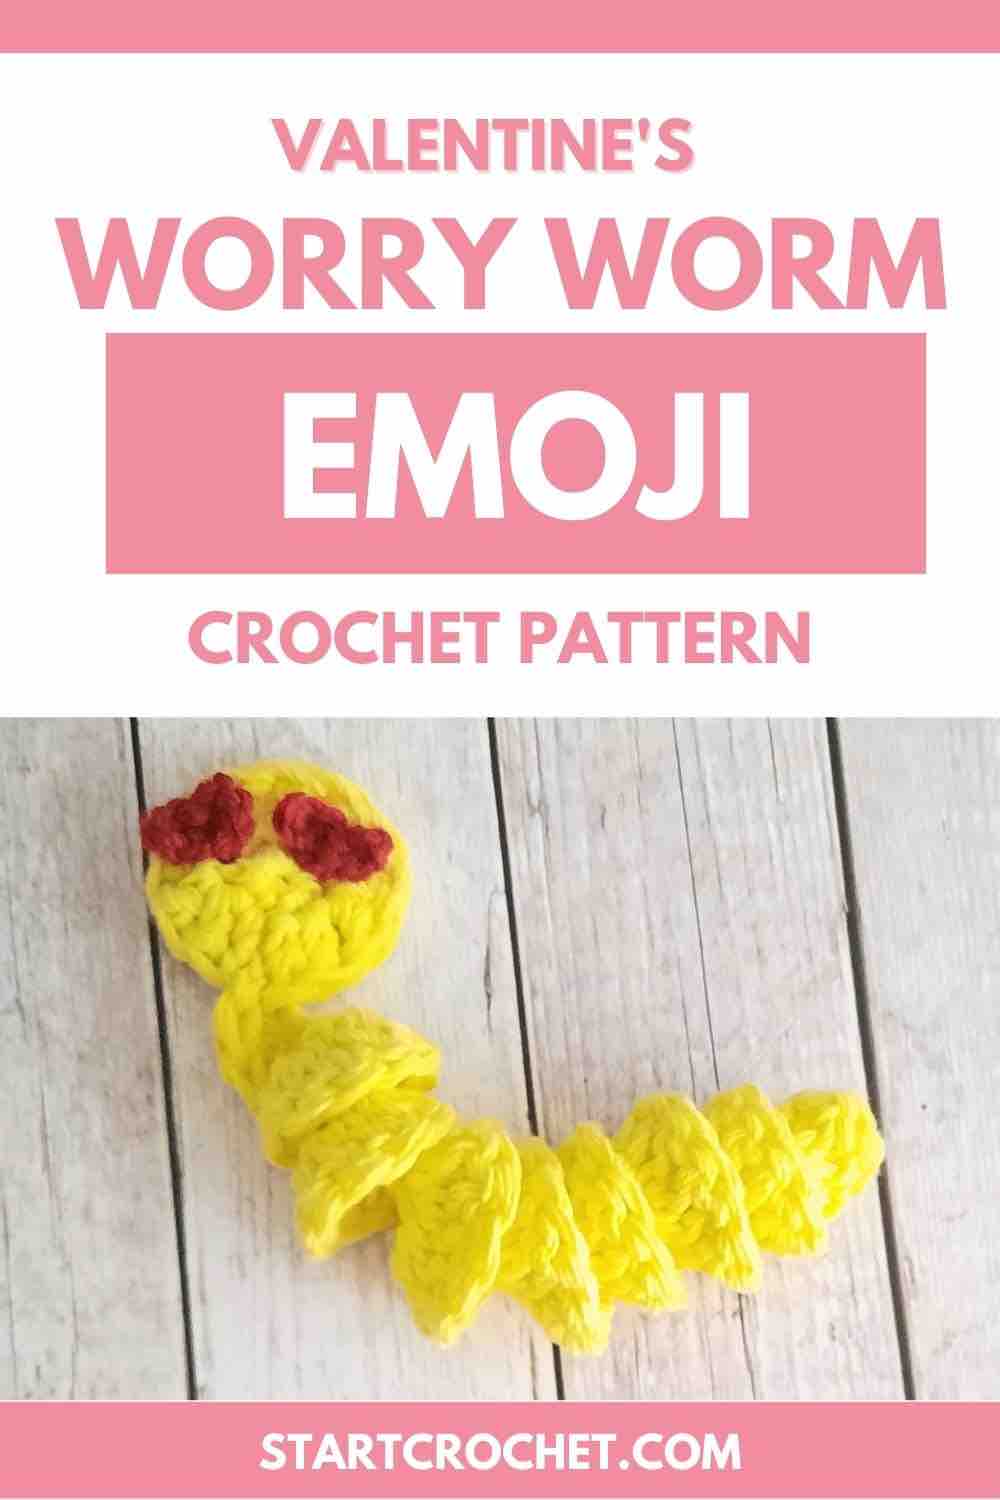 Valentine's Worry Worm Crochet Pattern Emoji - 5